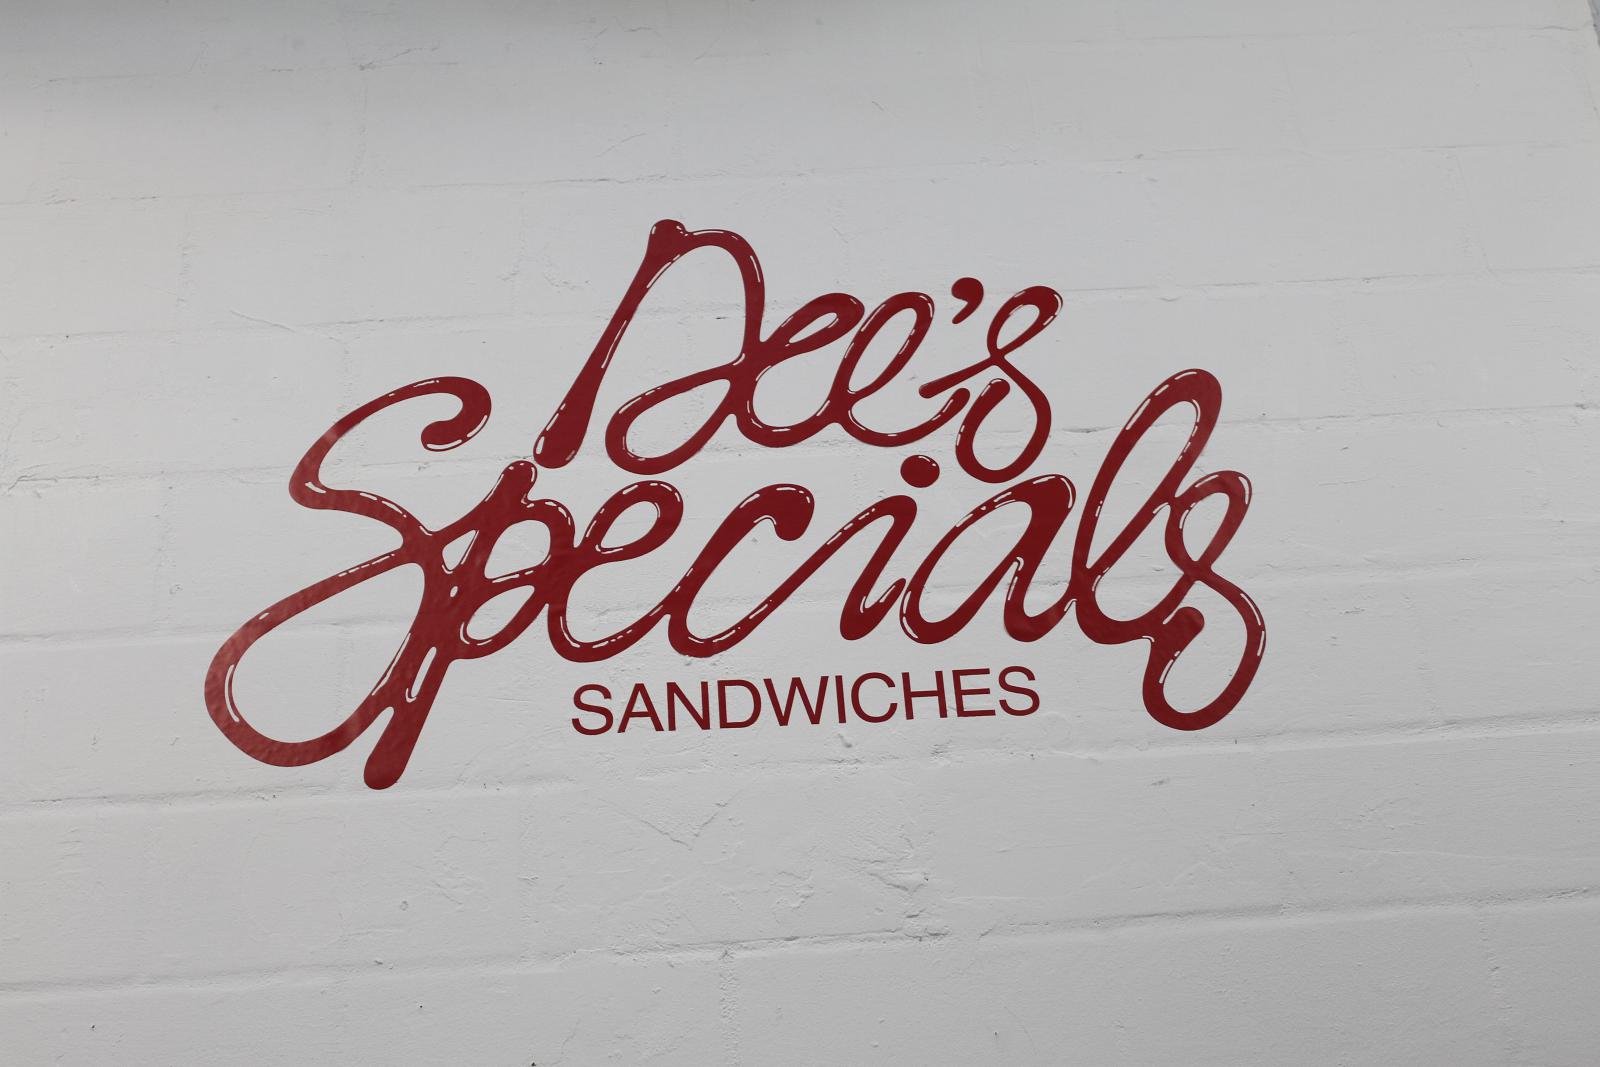 Dee's Specials